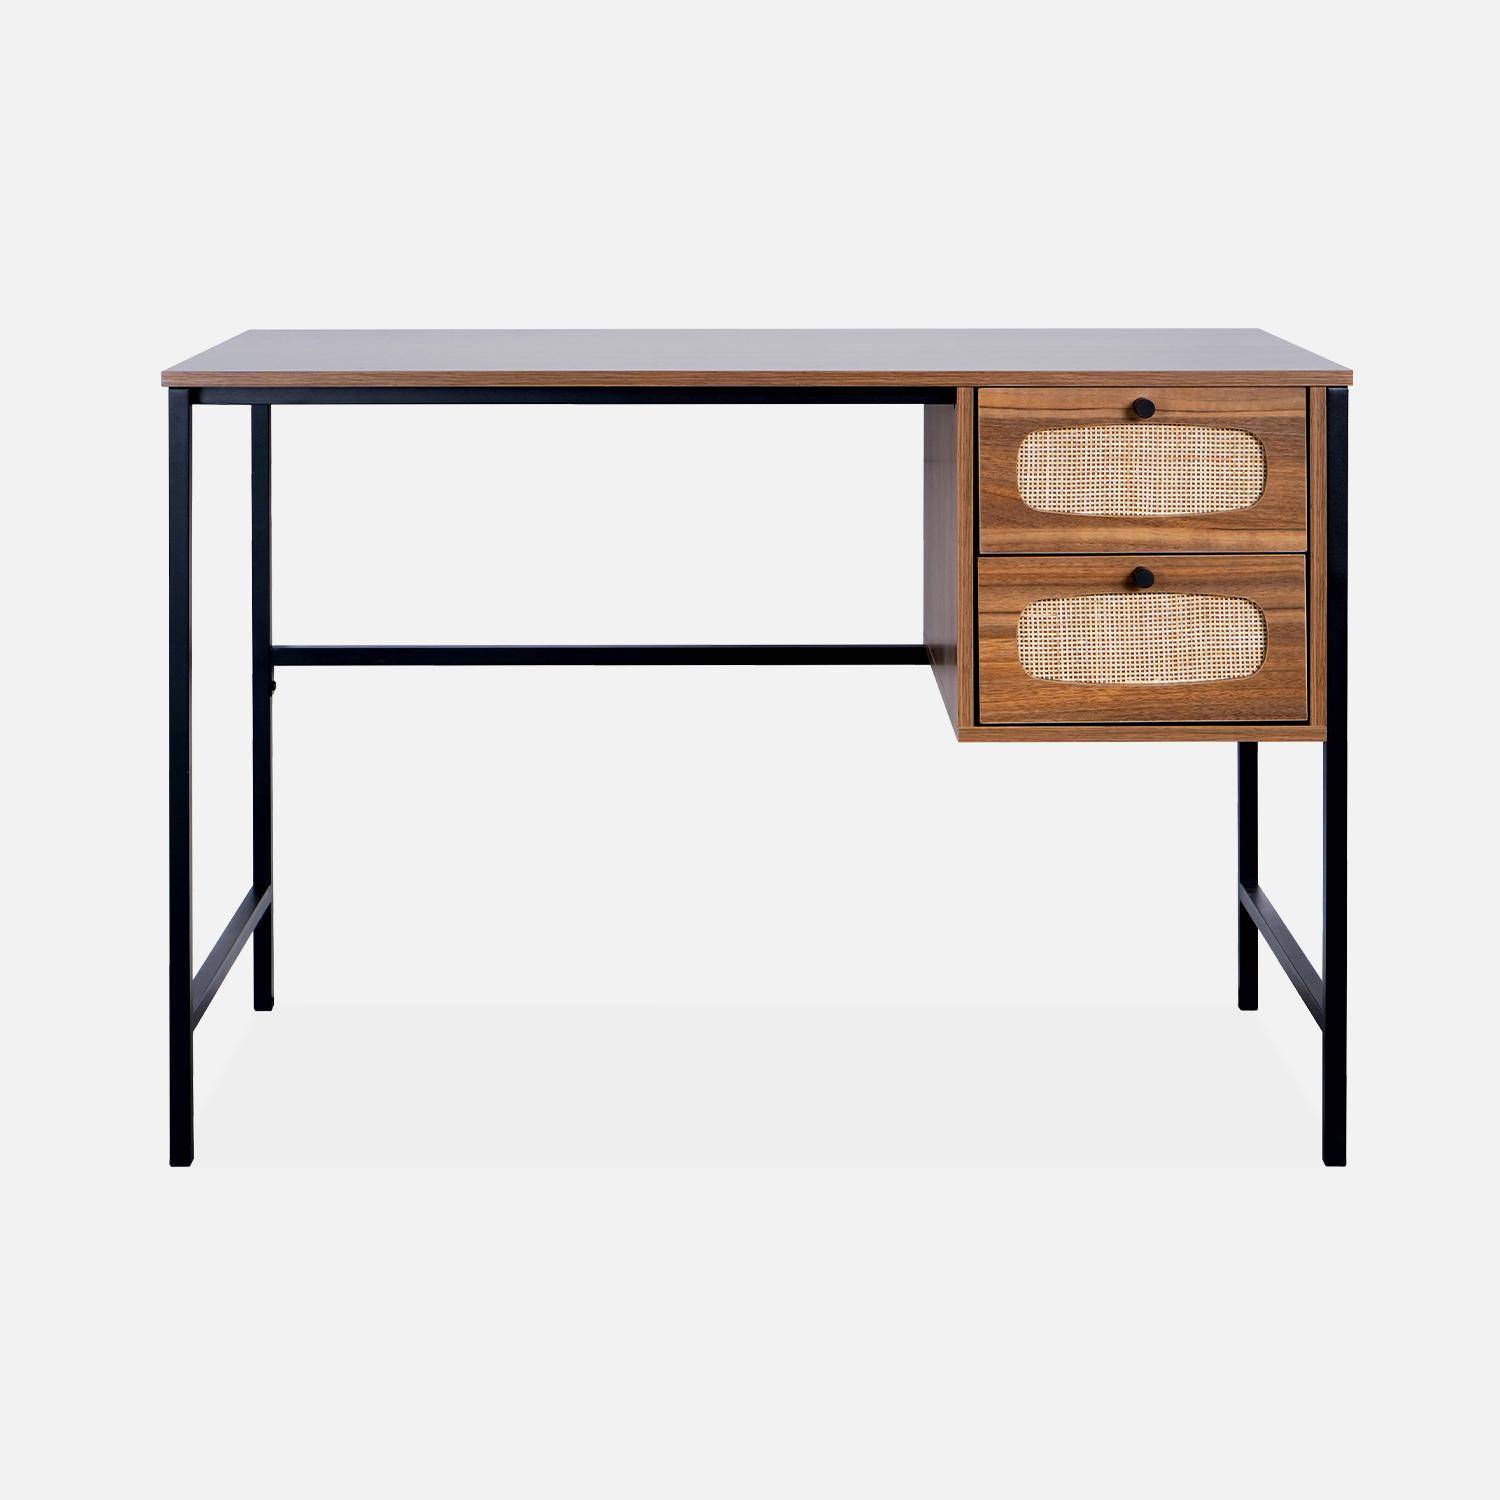 Retro bureau met hout- en rieteffect, zwarte metalen poten en handgrepen,sweeek,Photo4